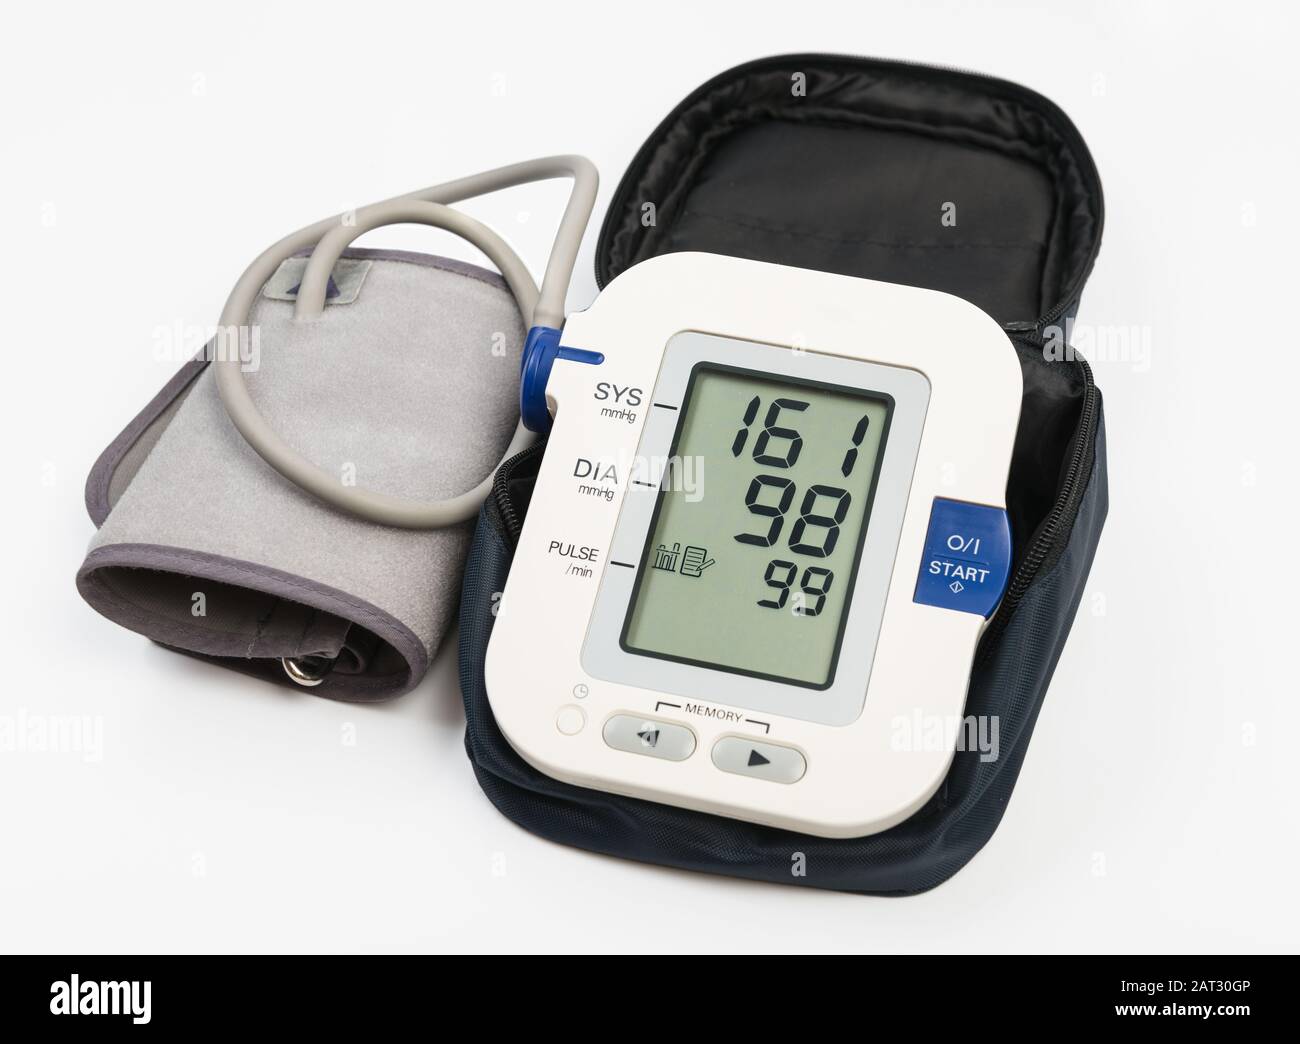 Elektronisches Blutdruckmessgerät und Manschette für den Fall. Anzeige des Bluthochdrucks 151/98. Beschneidungspfad Stockfoto